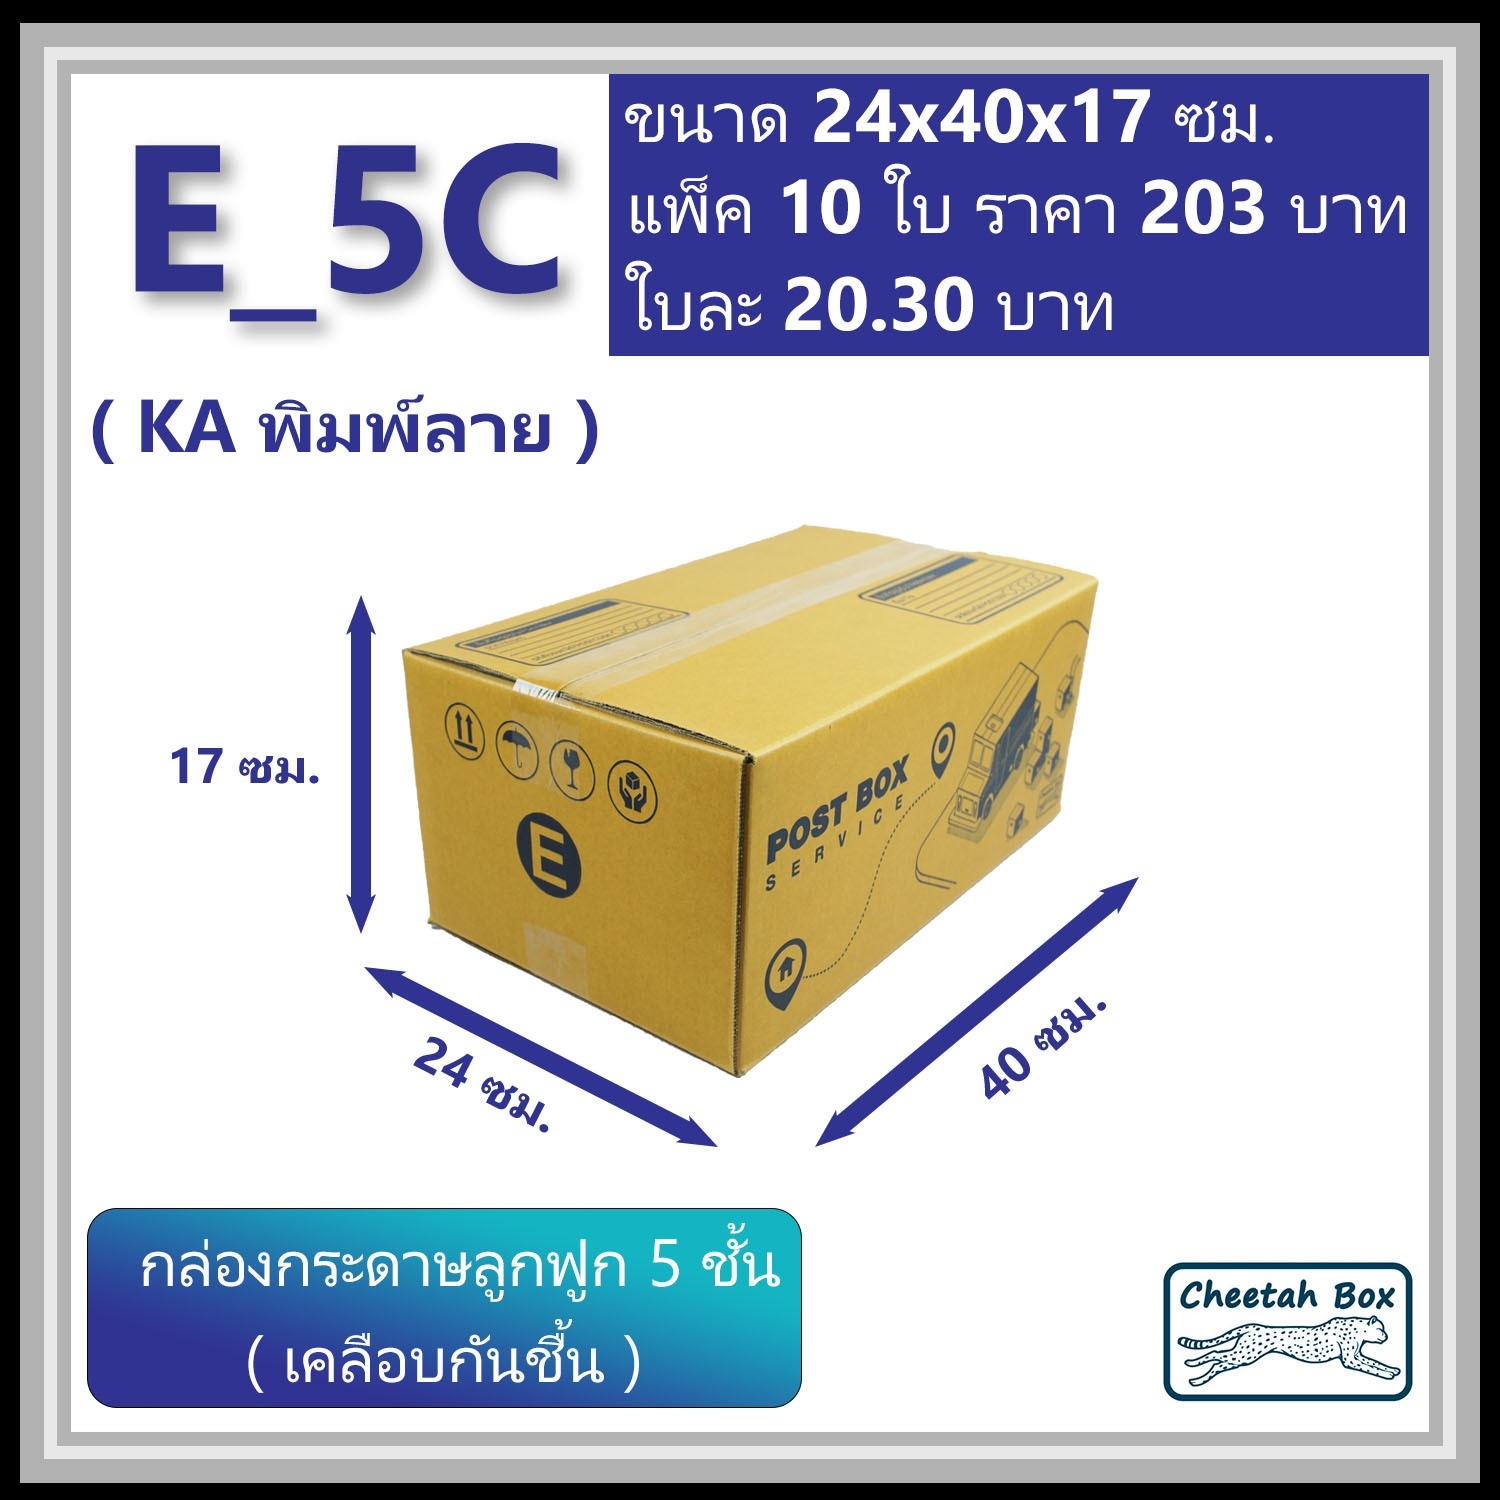 กล่องพัสดุ 5 ชั้น E-5C (จ) (KA125) เคลือบกันชิ้น พิมพ์ลาย ลูกฟูก 5 ชั้น (Cheetah Box ขนาด 24*40*17 CM)